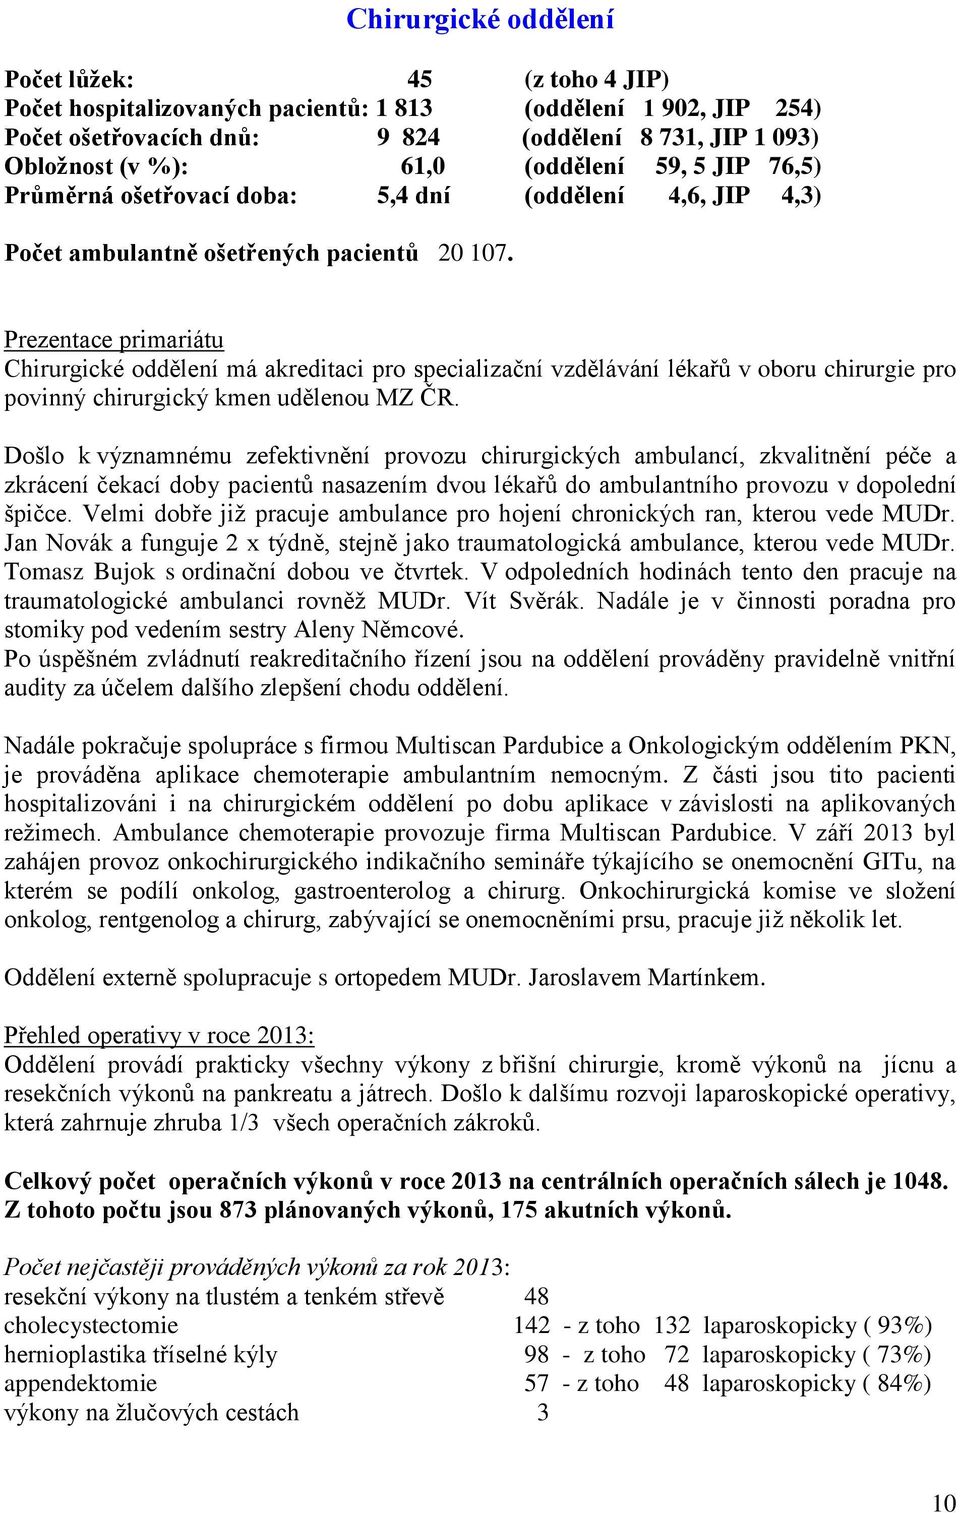 Prezentace primariátu Chirurgické oddělení má akreditaci pro specializační vzdělávání lékařů v oboru chirurgie pro povinný chirurgický kmen udělenou MZ ČR.